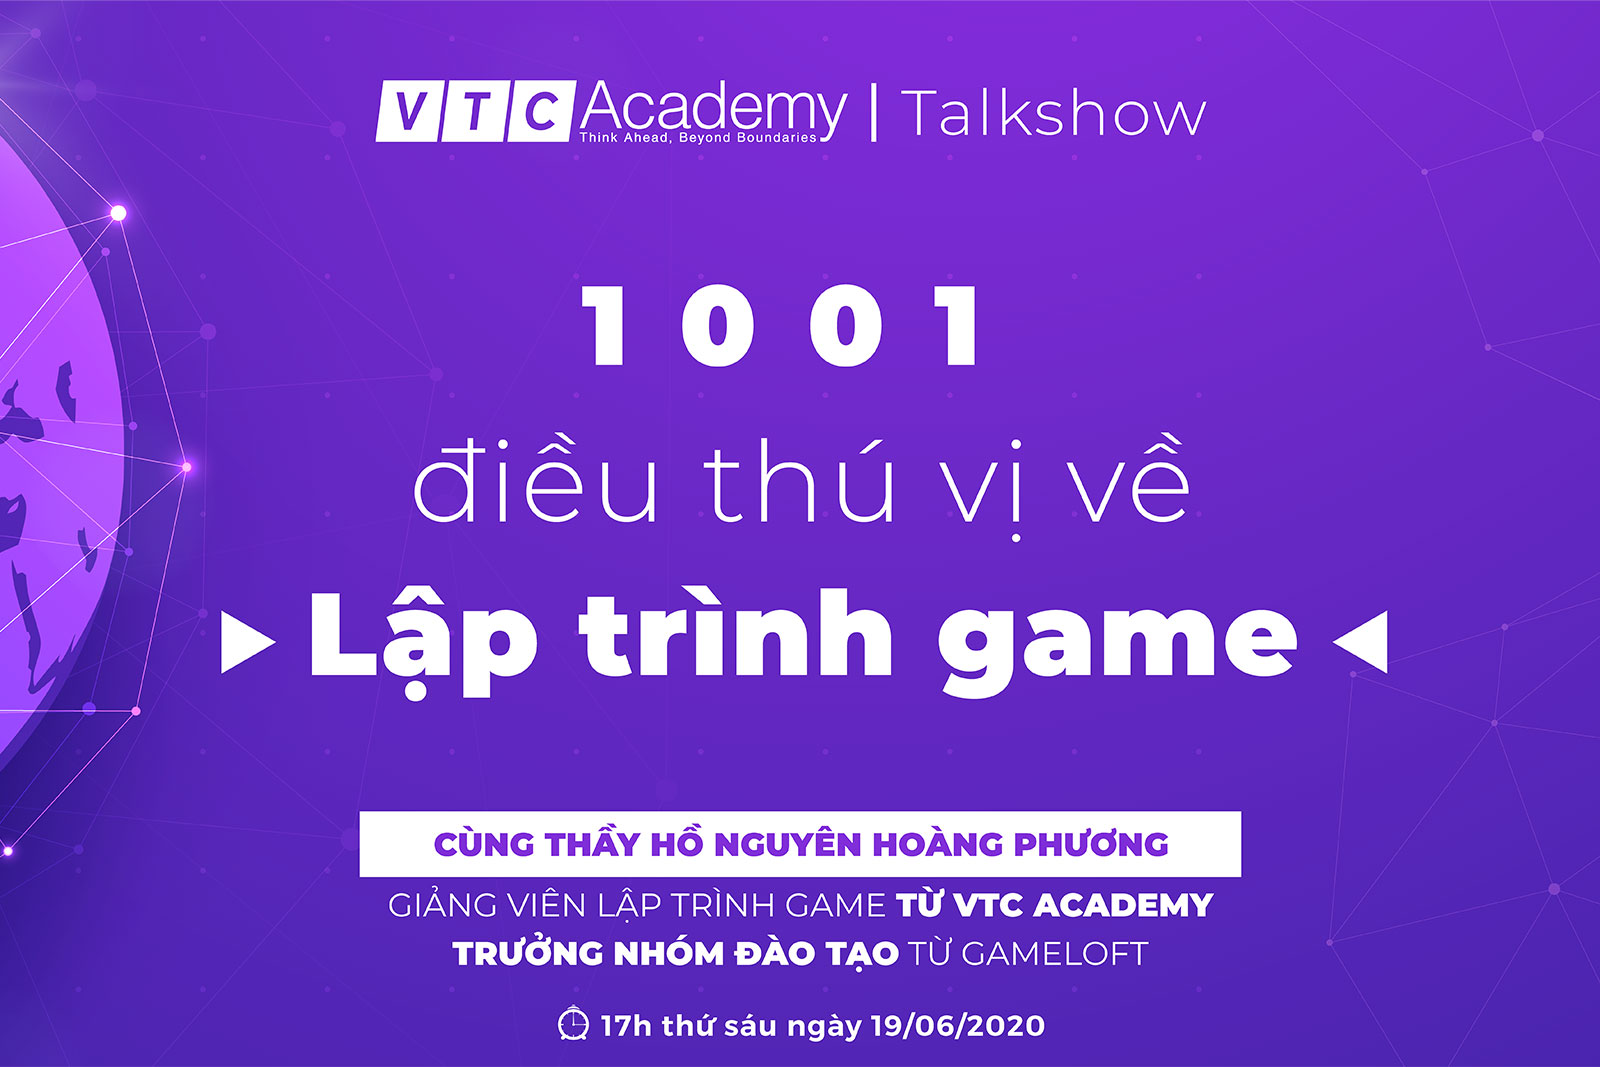 Talkshow “1001 điều thú vị về lập trình game”